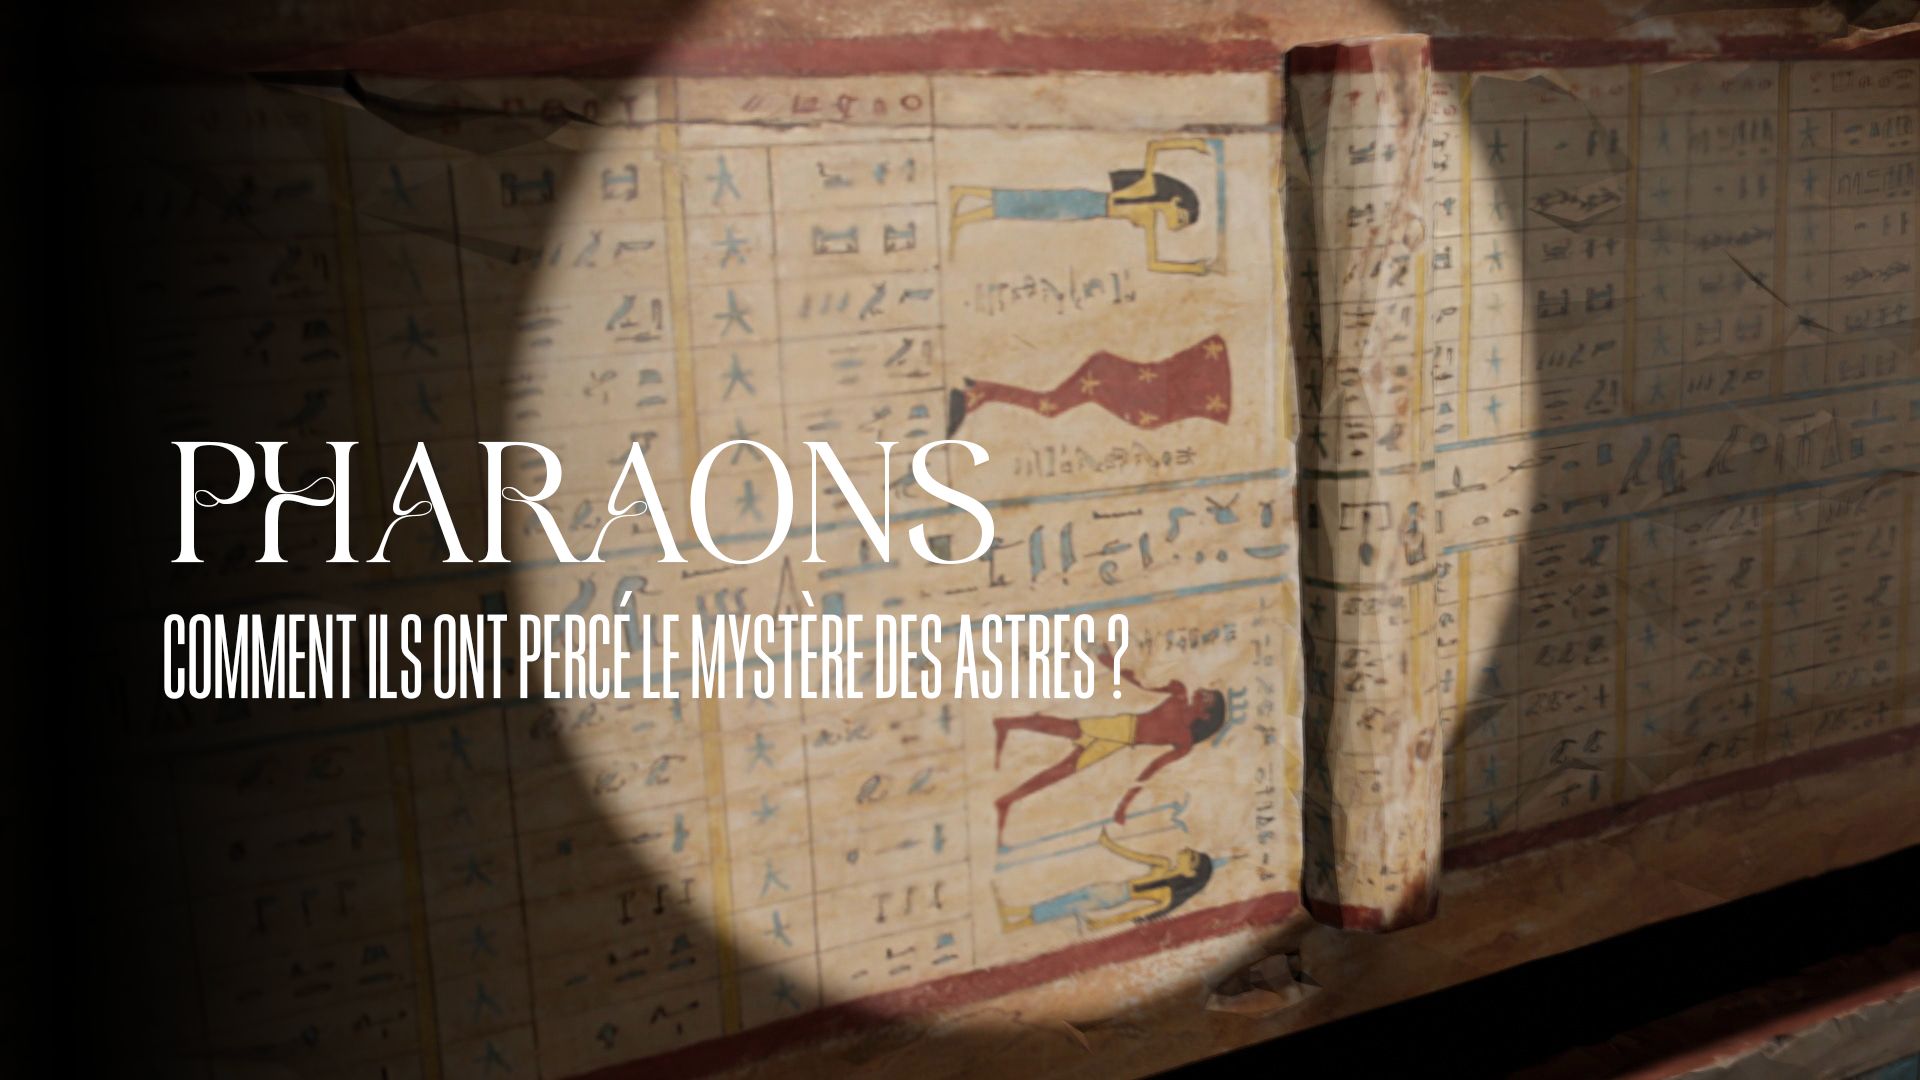 Pharaons, comment ils ont percé le mystère des astres